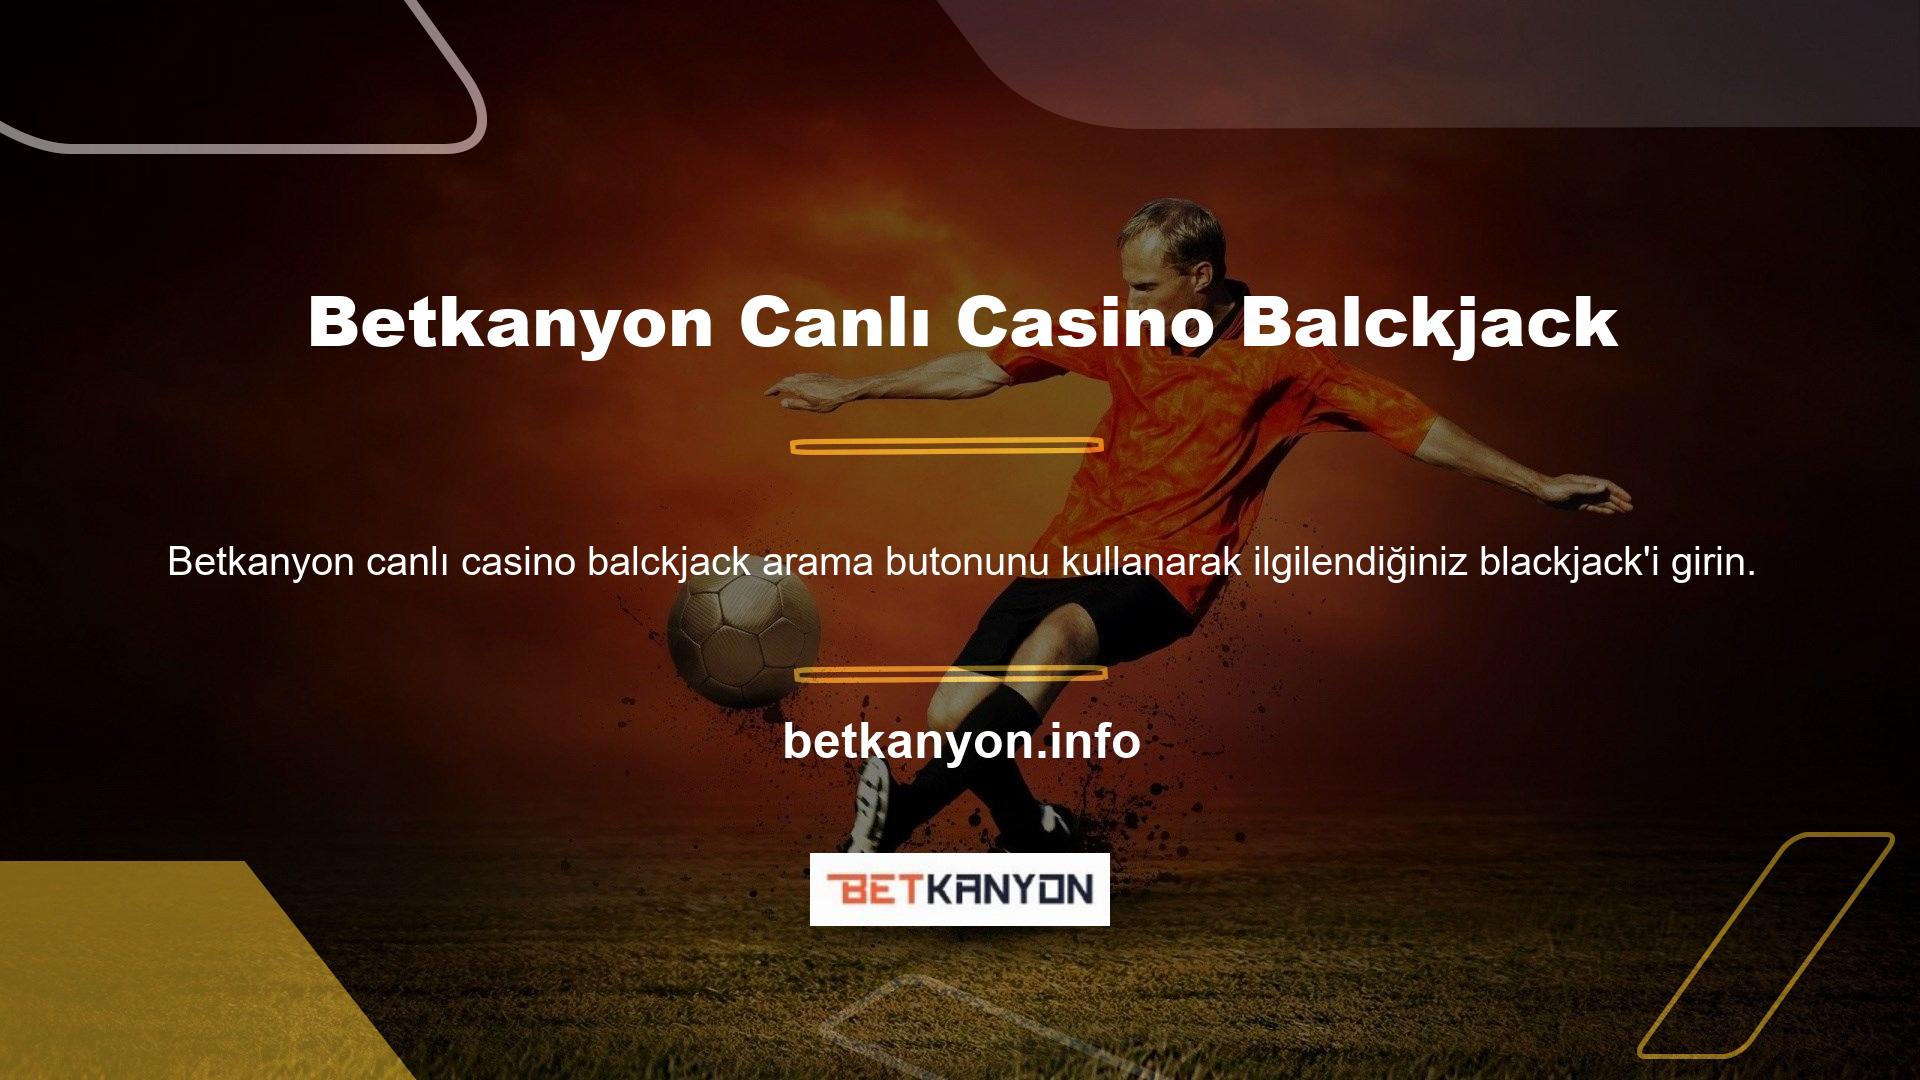 Şu anda tek seçeneğiniz Betkanyon Canlı Casino web sitesinde blackjack oyununa katılmak